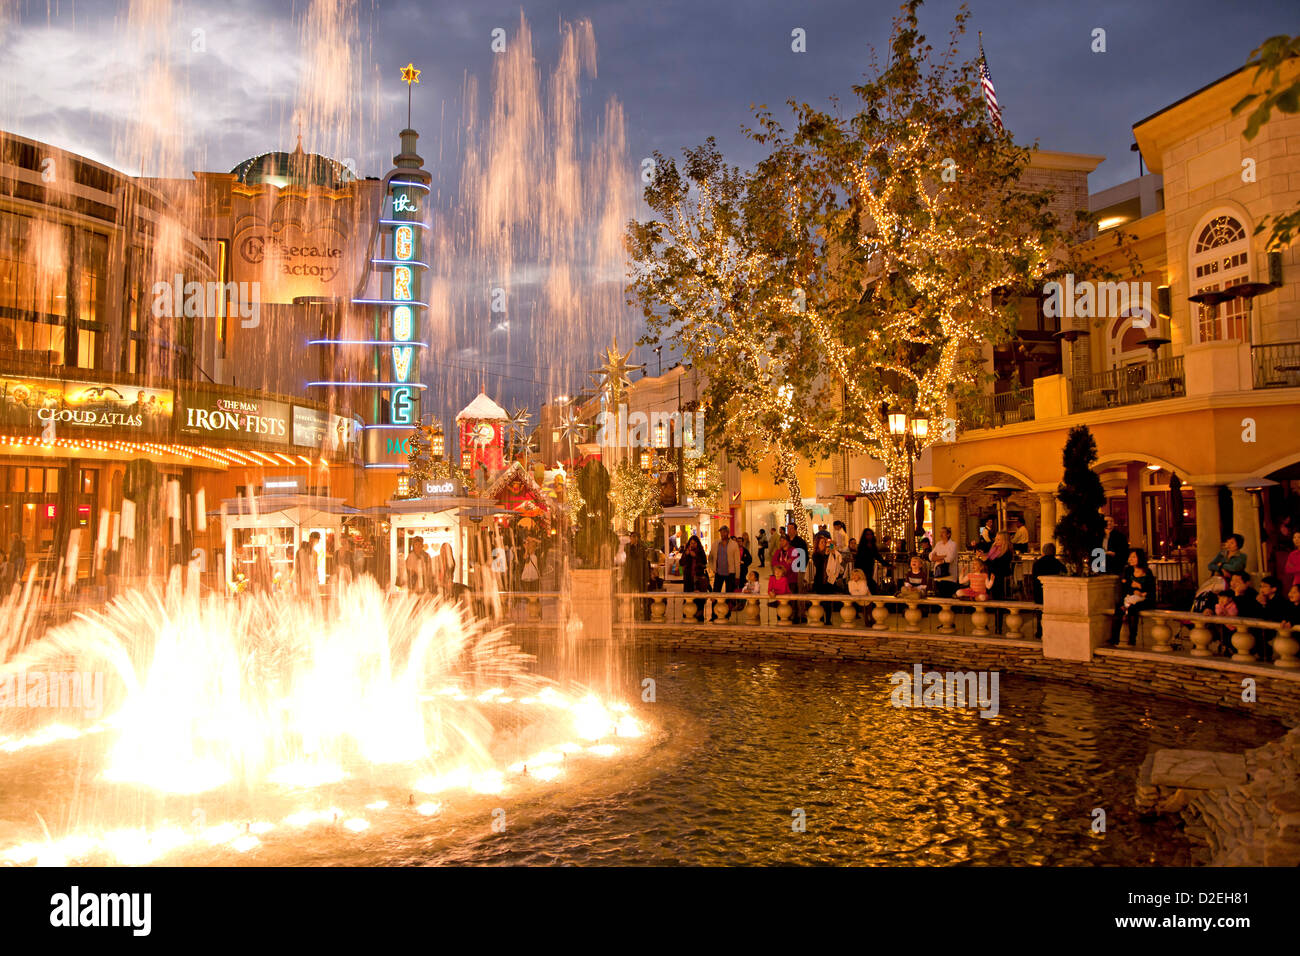 Weihnachts-Dekoration und Beleuchtung am Brunnen von The Grove, Shopping-Mall in Los Angeles, Kalifornien, USA Stockfoto